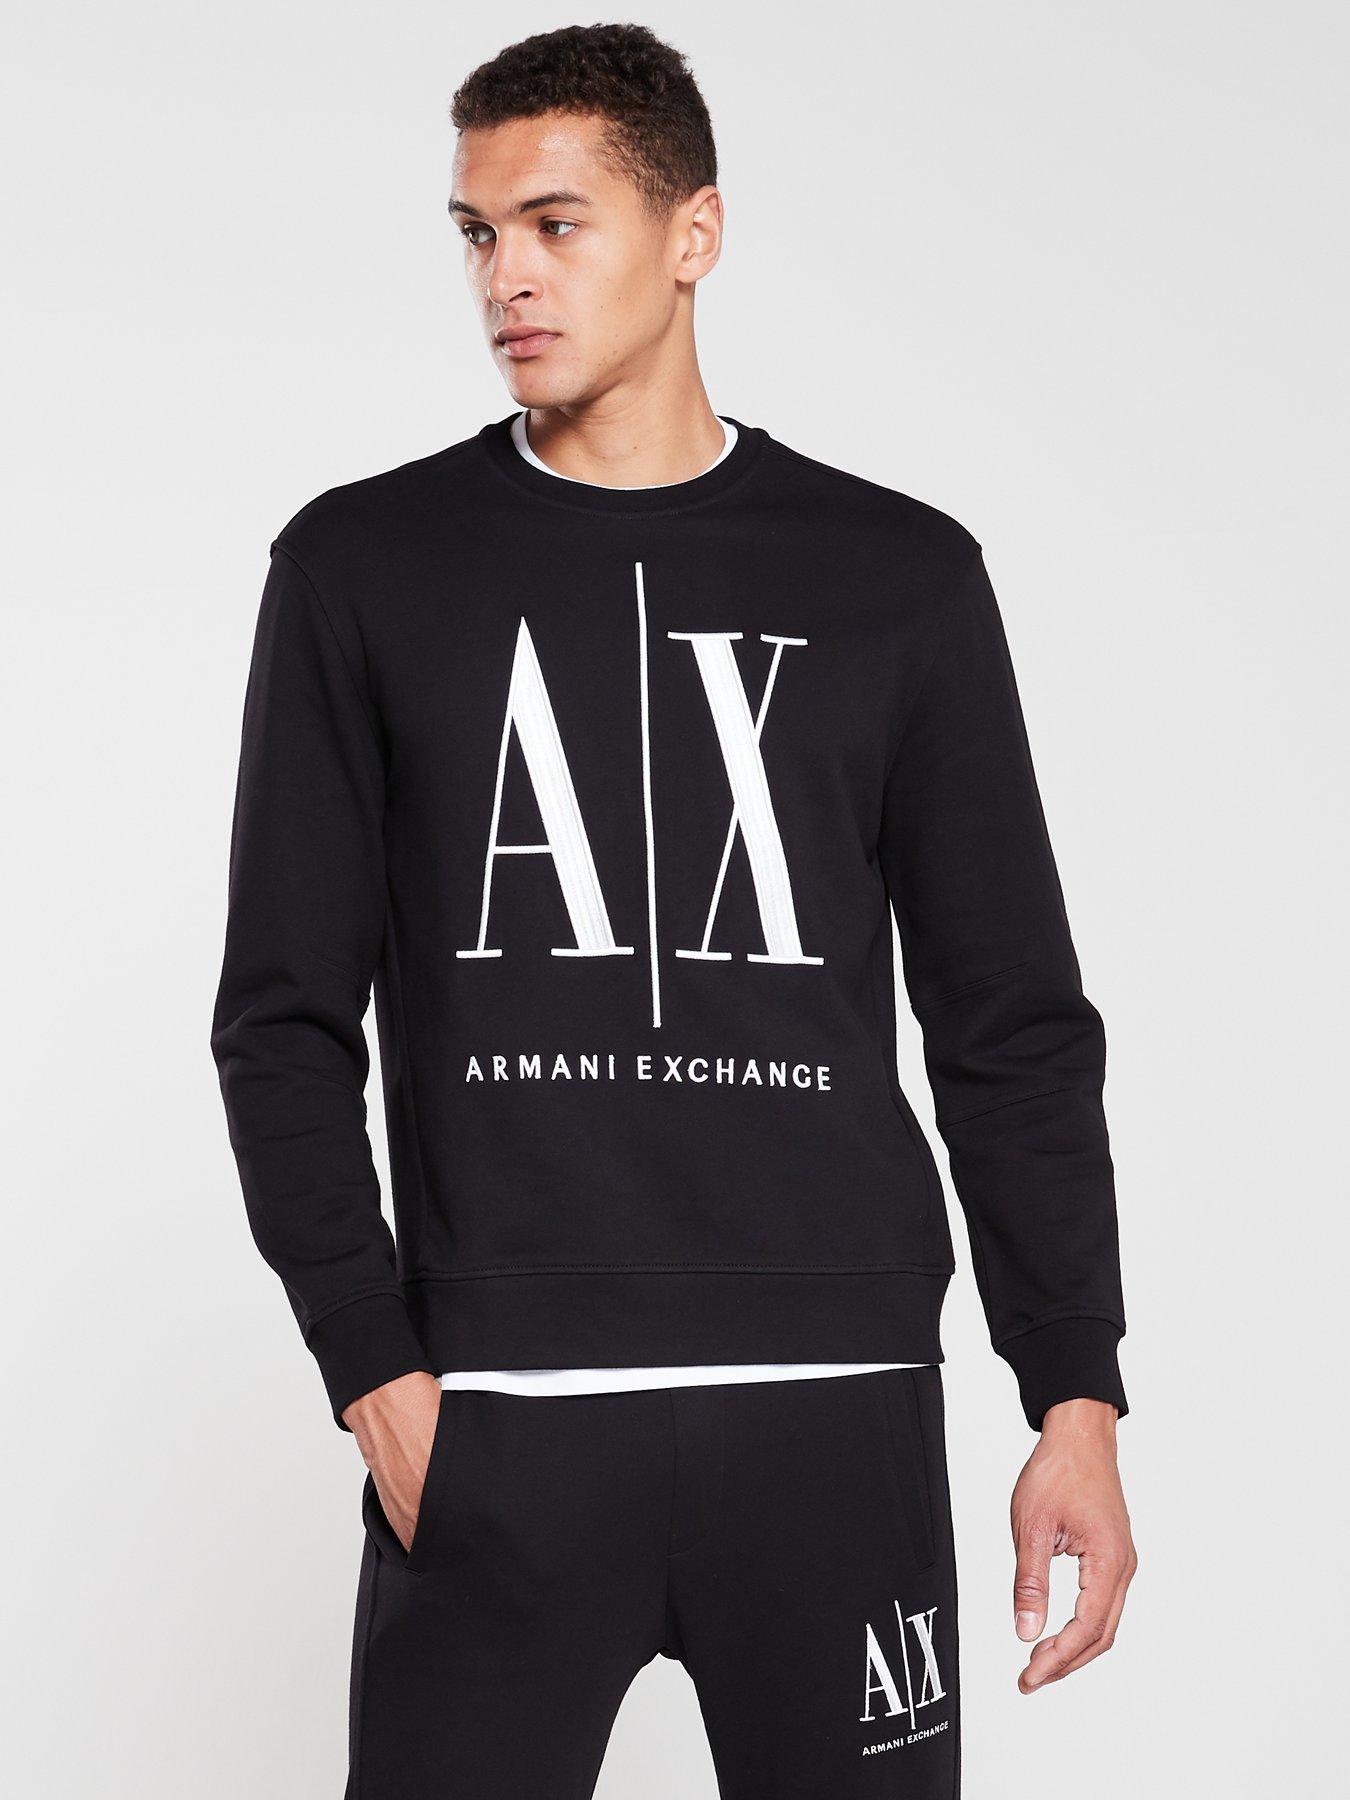 armani exchange men's sweatshirt